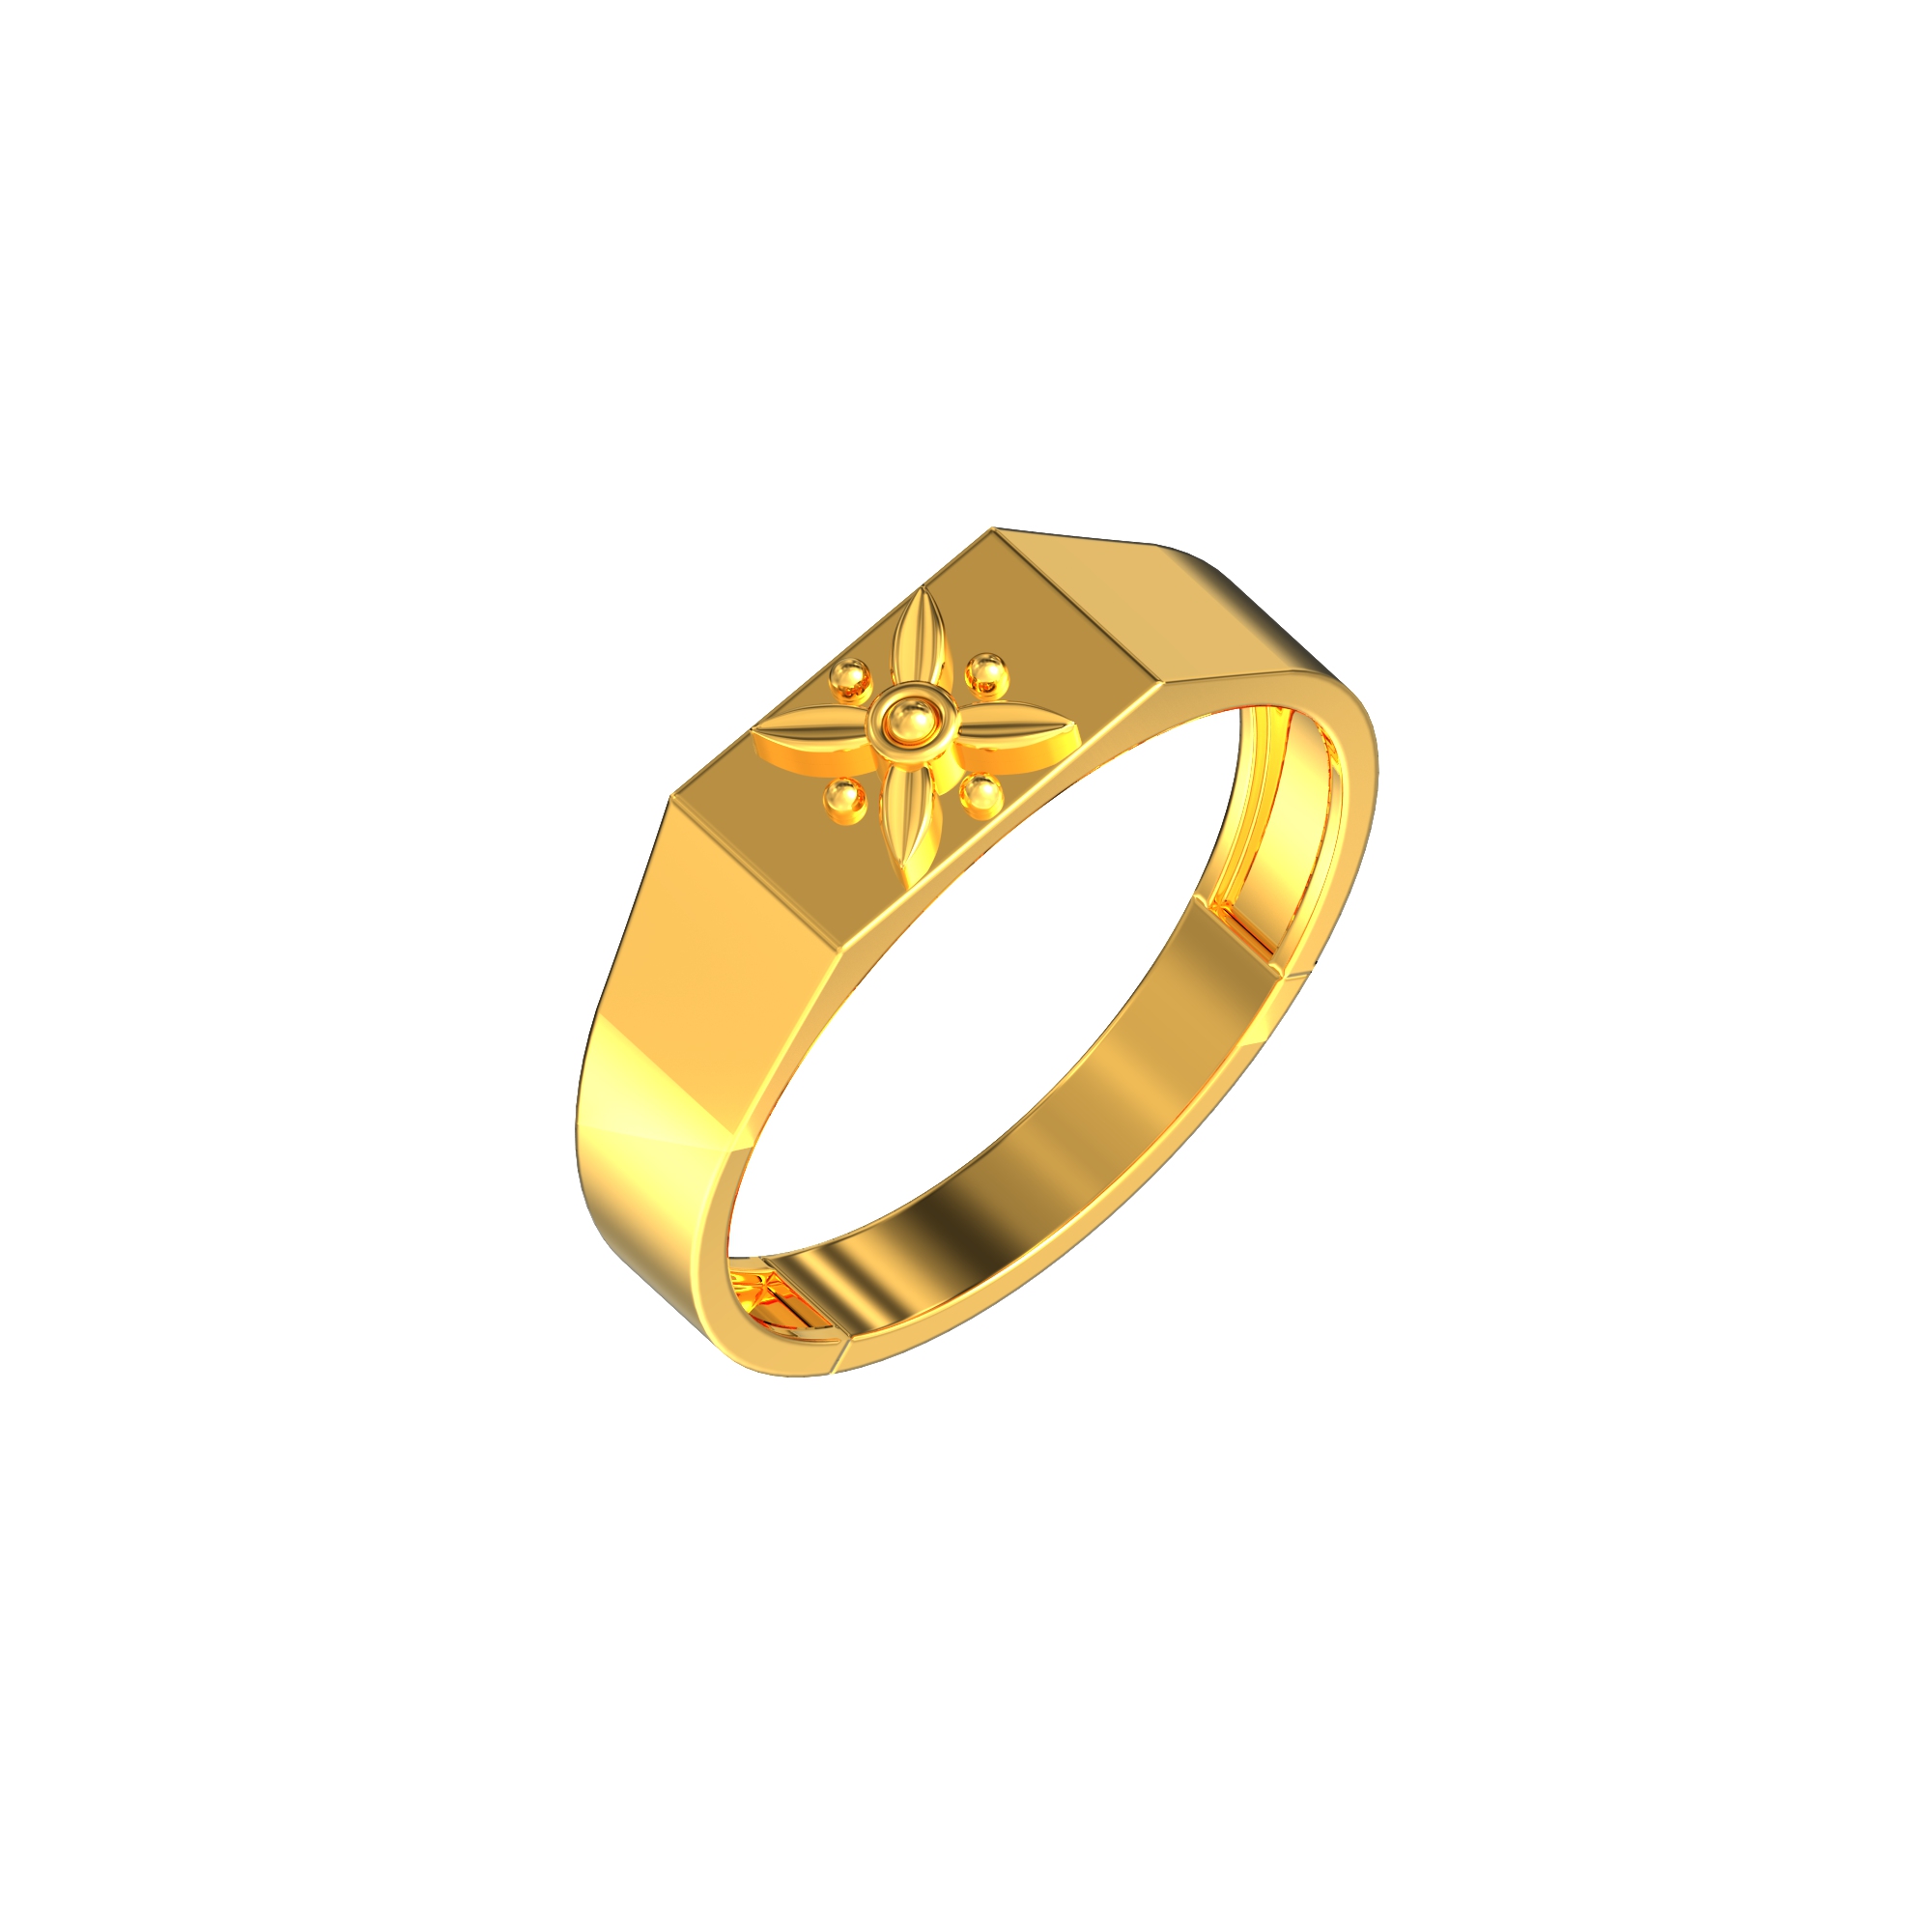 Gents Floral Design Gold Ring